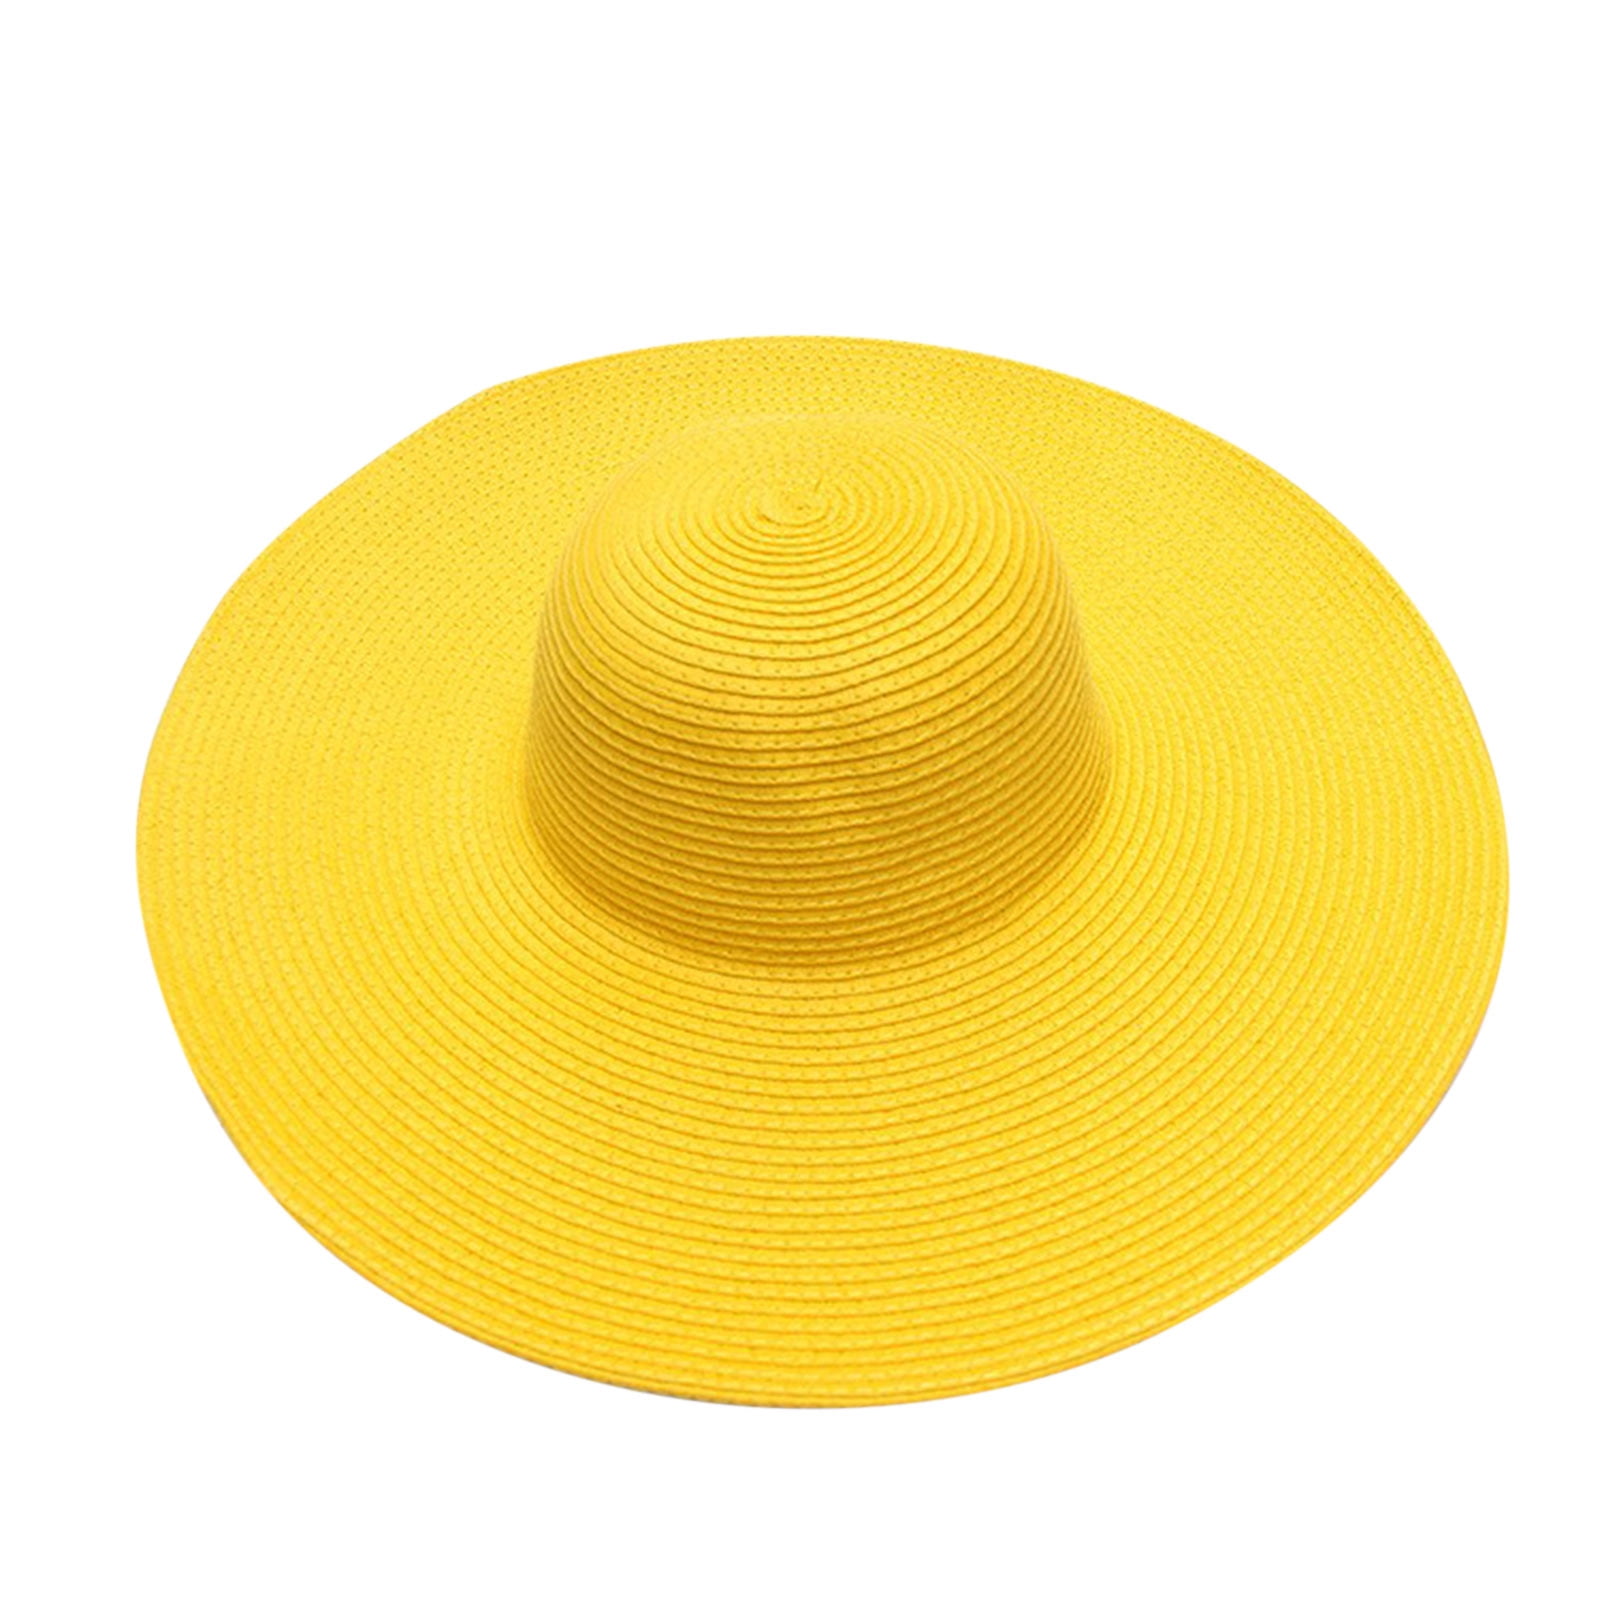 Yubnlvae Summer Hats for Women Wide Bongrace Women Straw Beach Hat Little  Girl Sun Cap Foldable Ladies Hats Yellow 